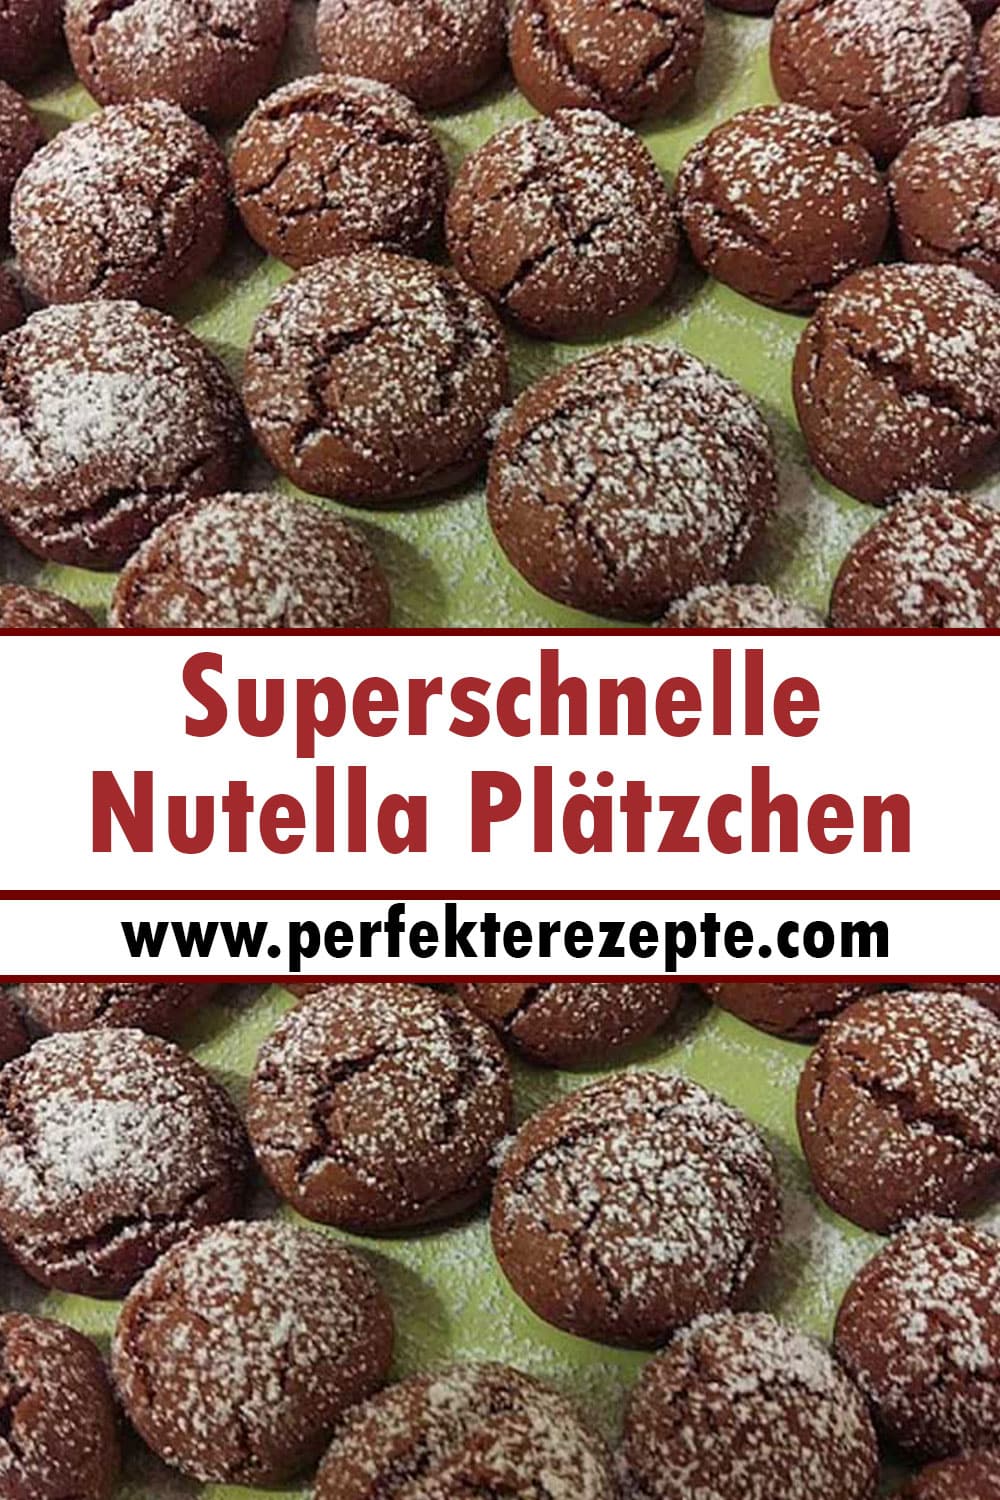 Superschnelle Nutella Plätzchen Rezept